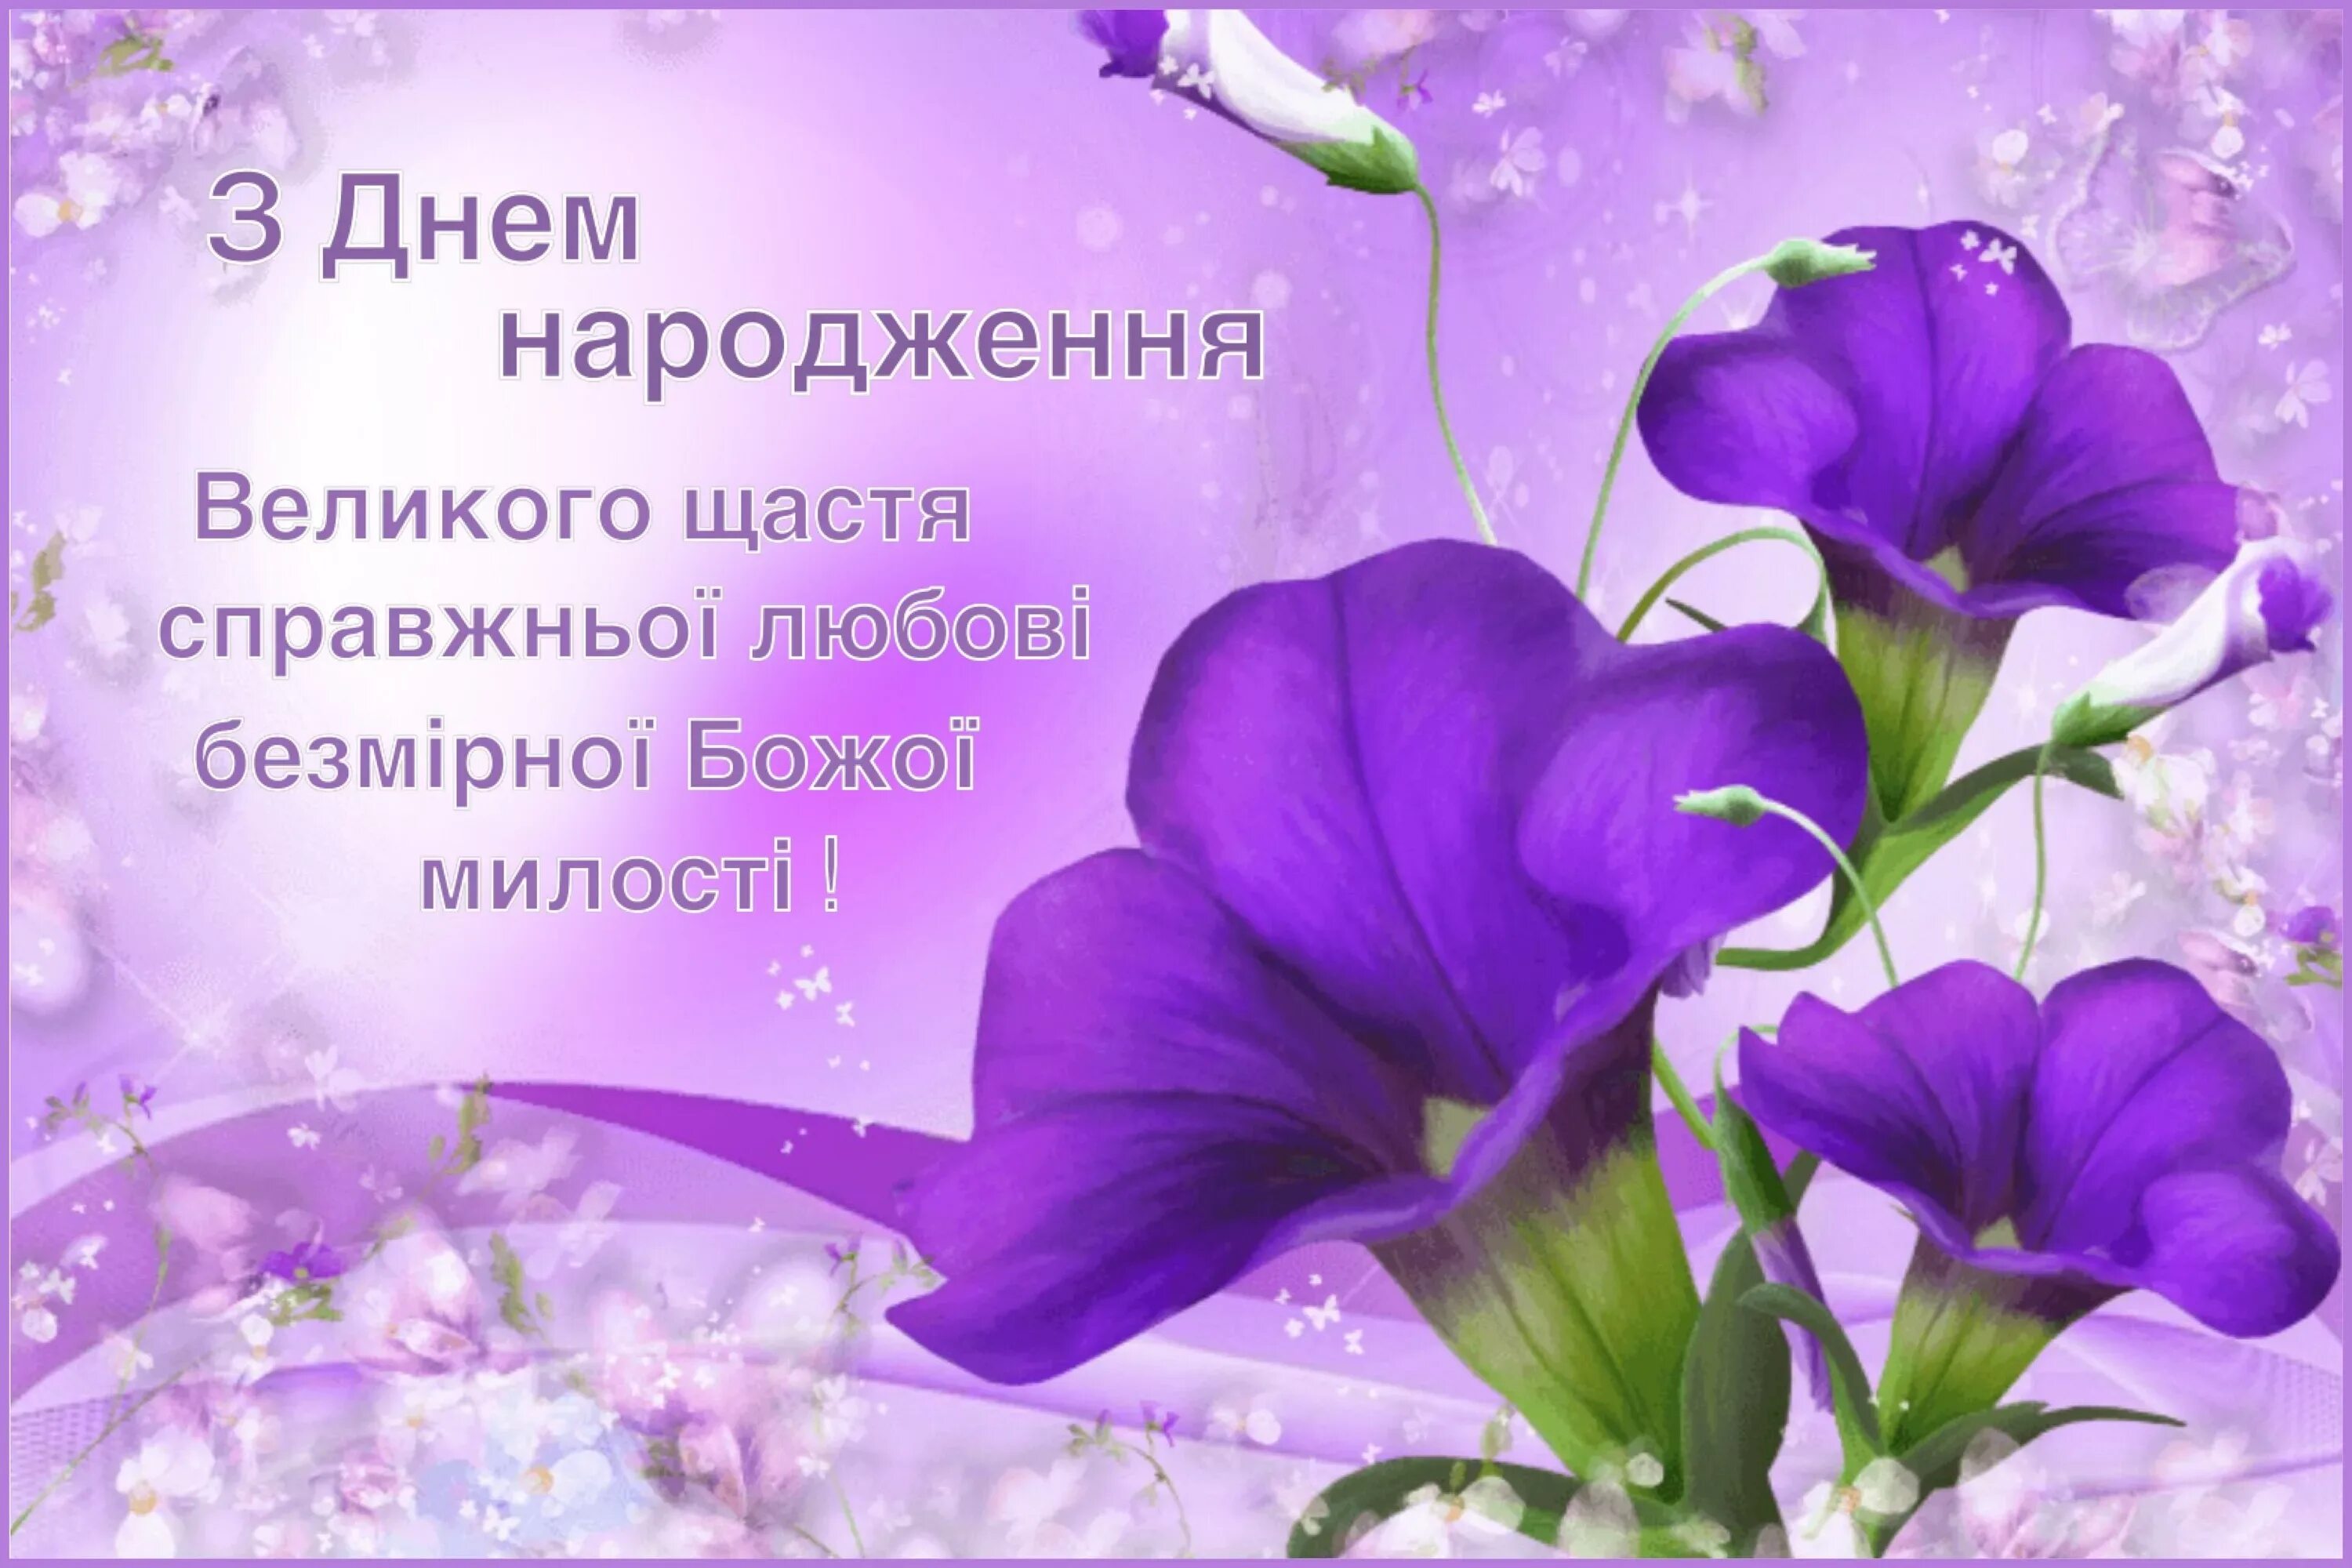 Вітання на день народження на українській. З днем народження. Поздоровлення з днем народження. З днем народження картинки. Листівки з днем народження.